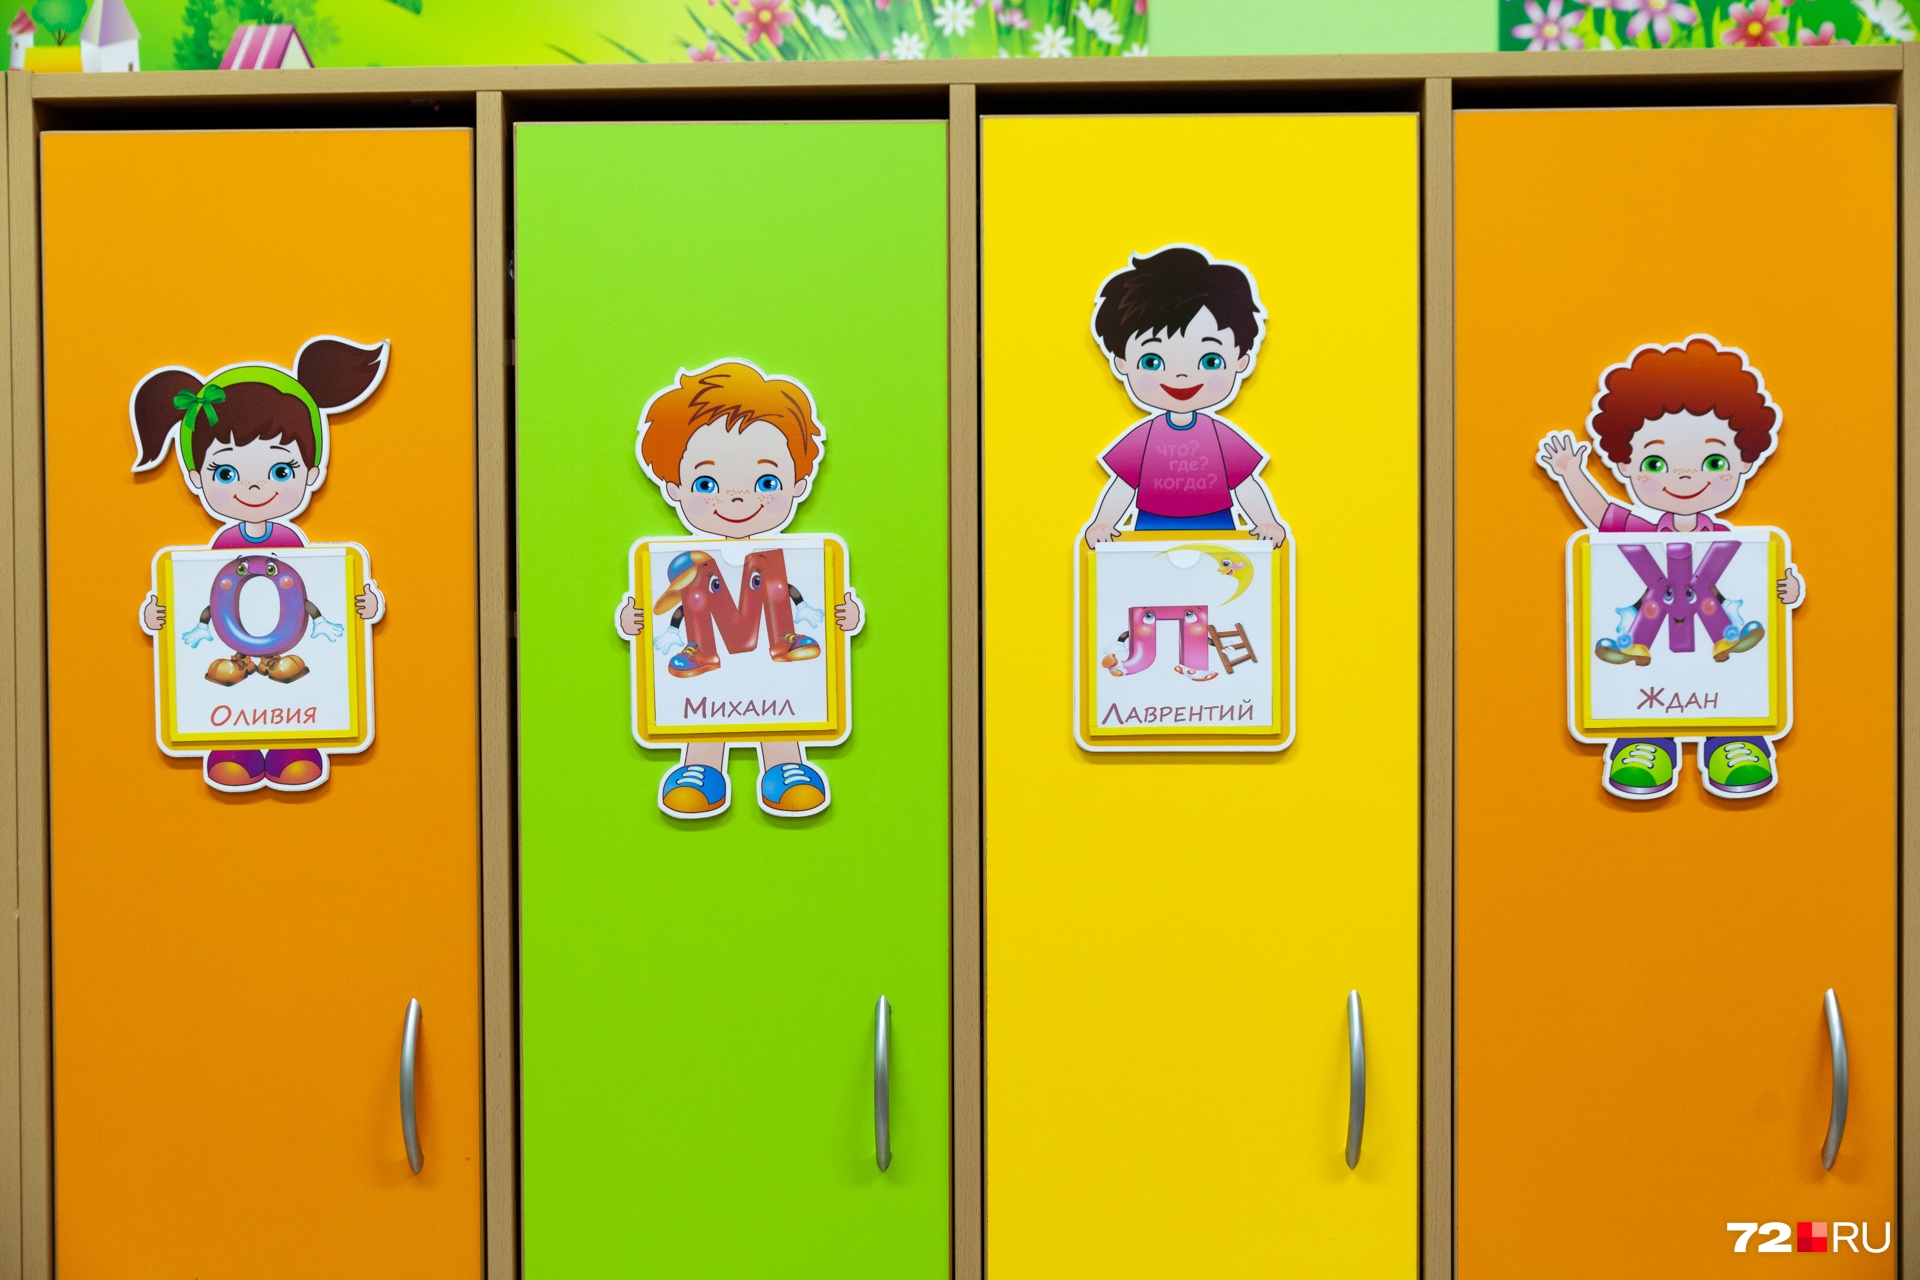 Самый популярный рисунок на шкафчиках в детском саду 100 к одному